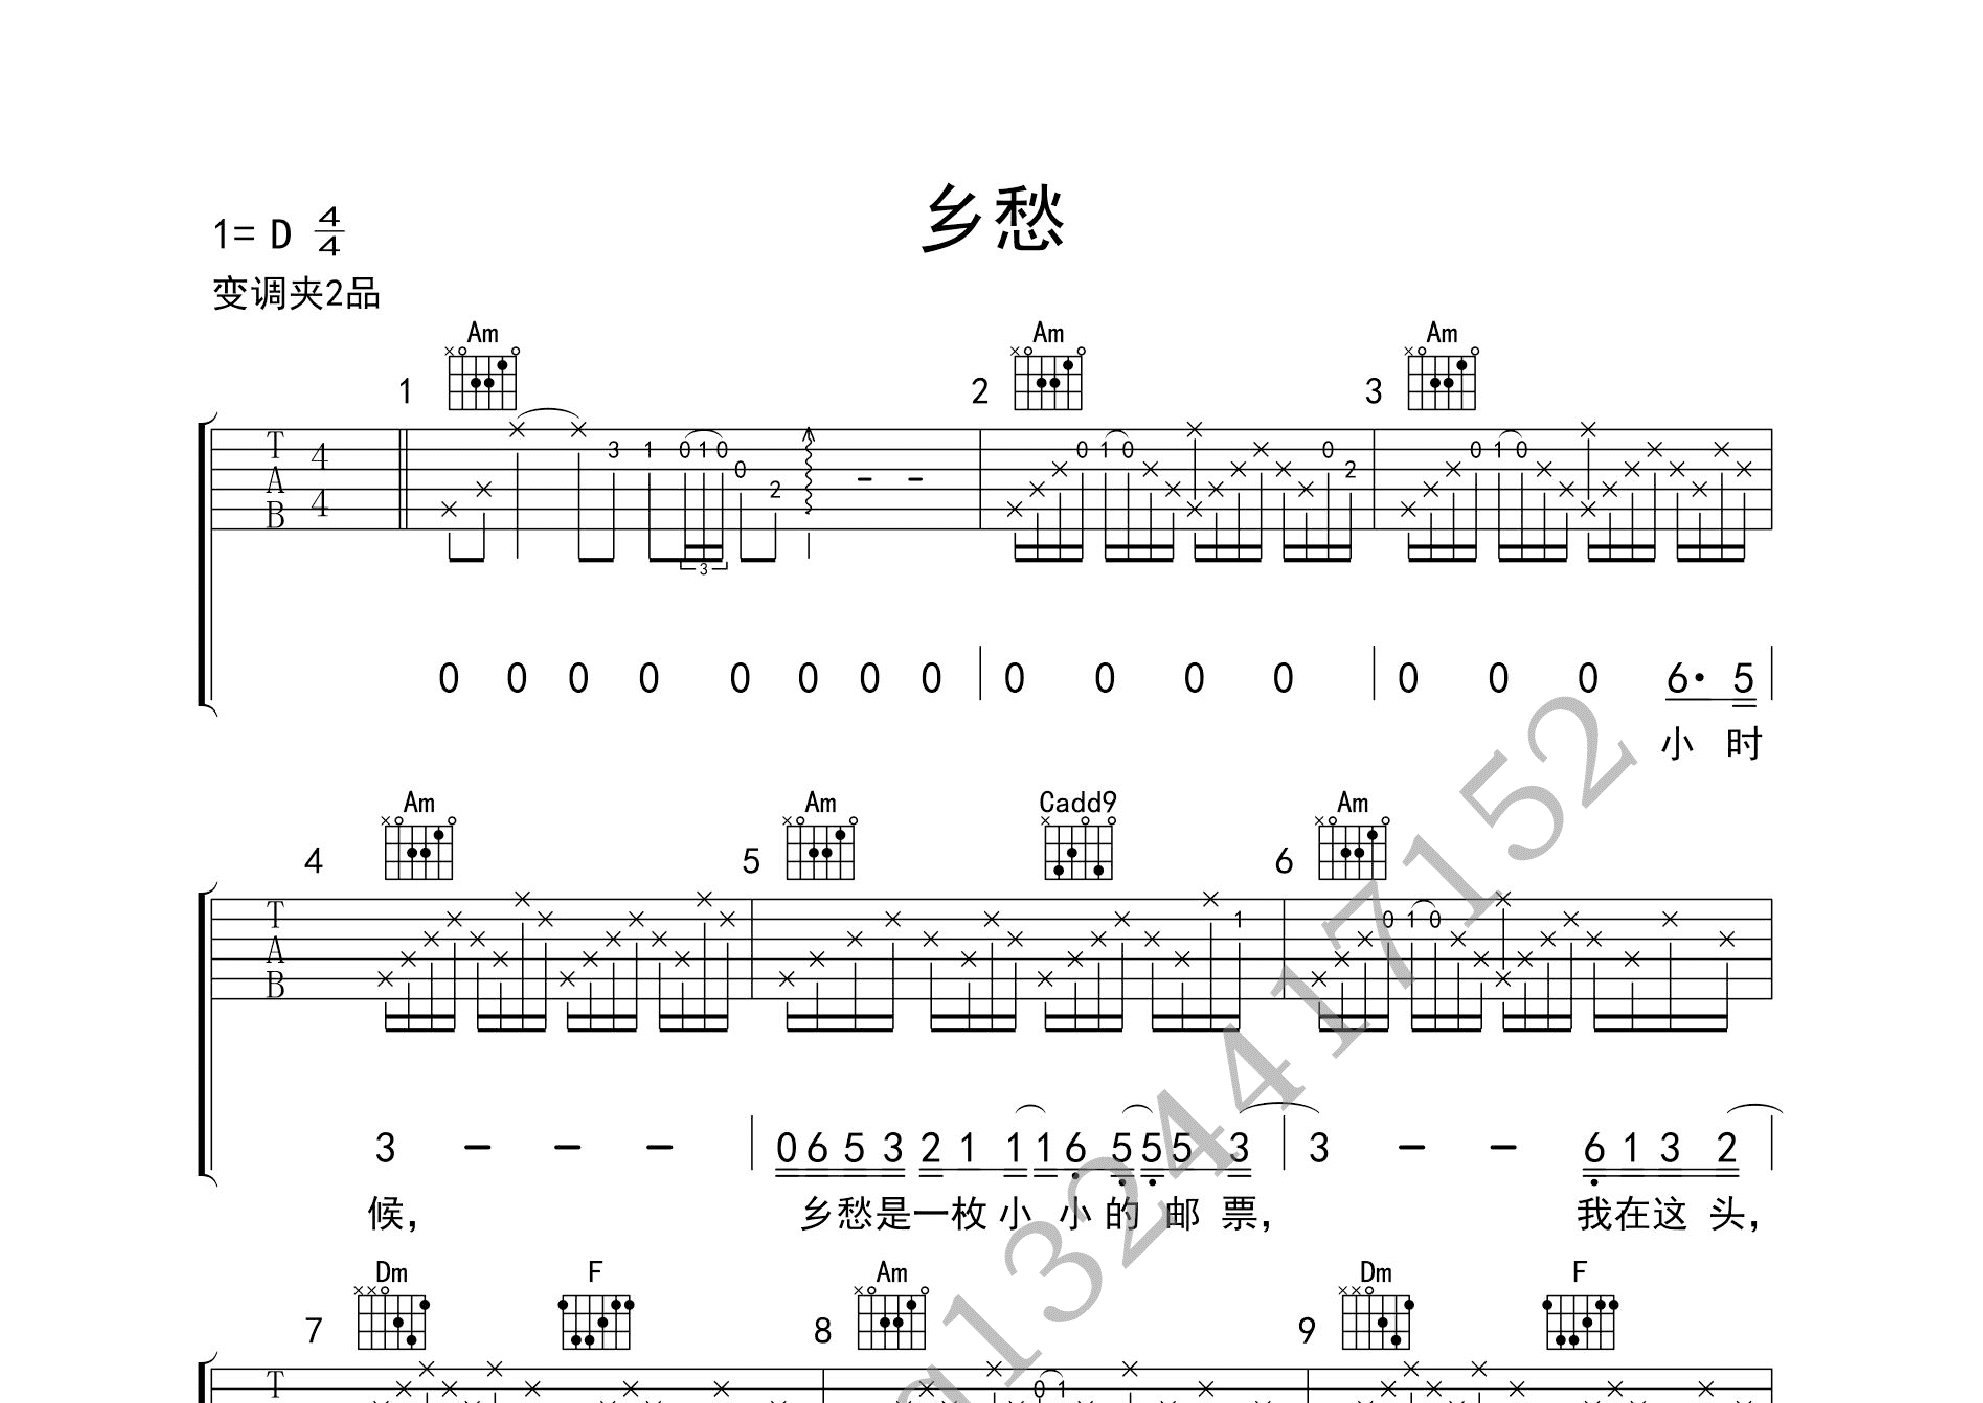 乡愁(赵照,齐豫版本弹唱)吉他谱(pdf谱,弹唱)_群星